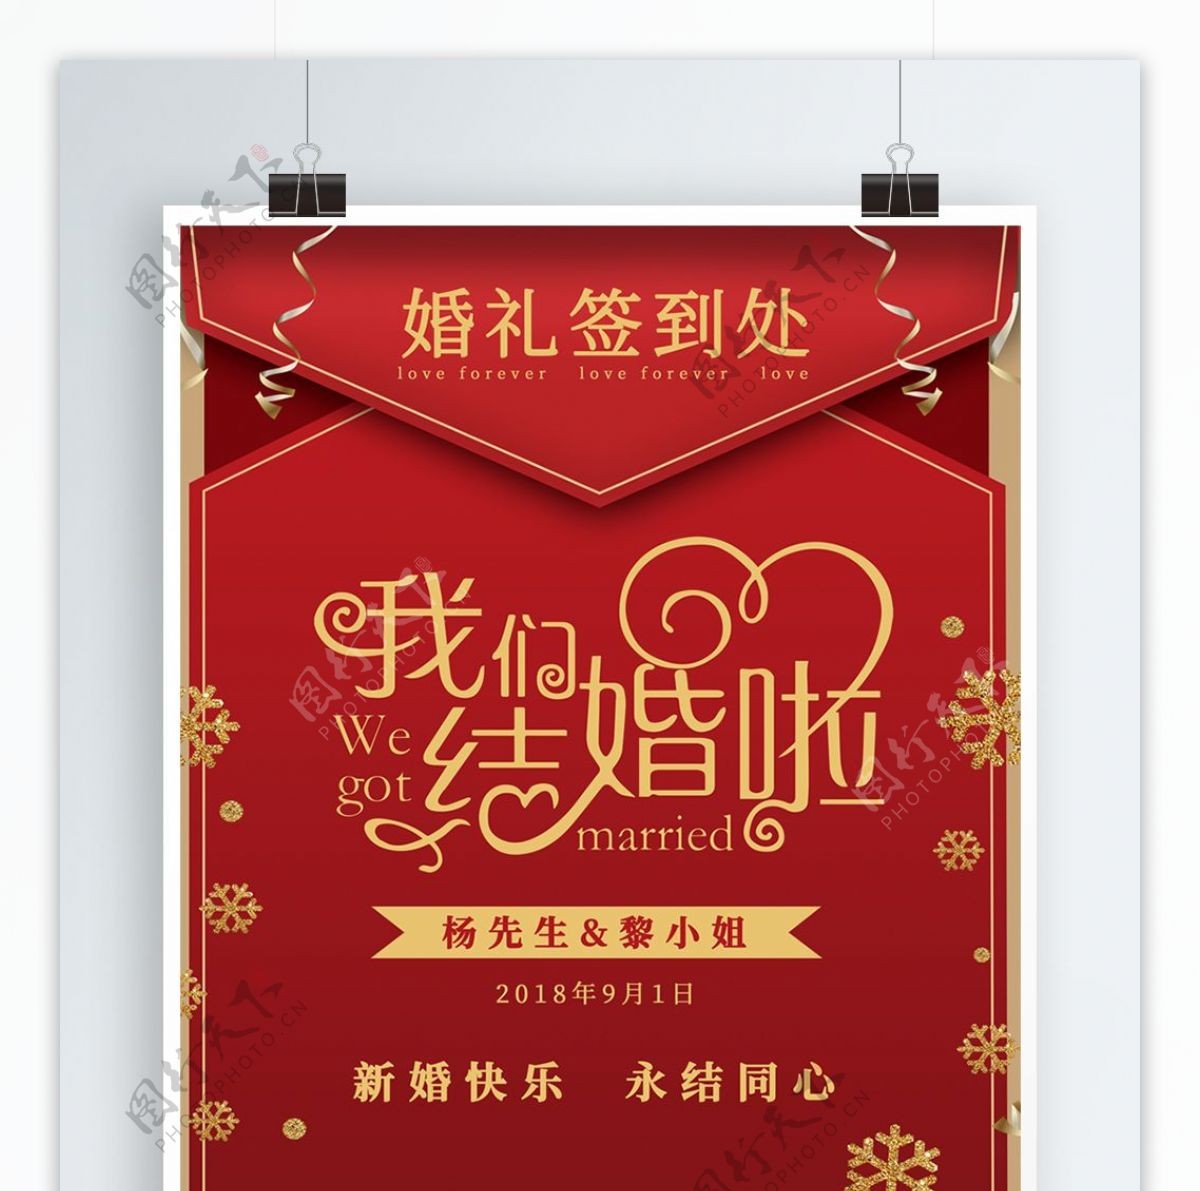 时尚简约红色喜庆结婚婚礼签到处海报